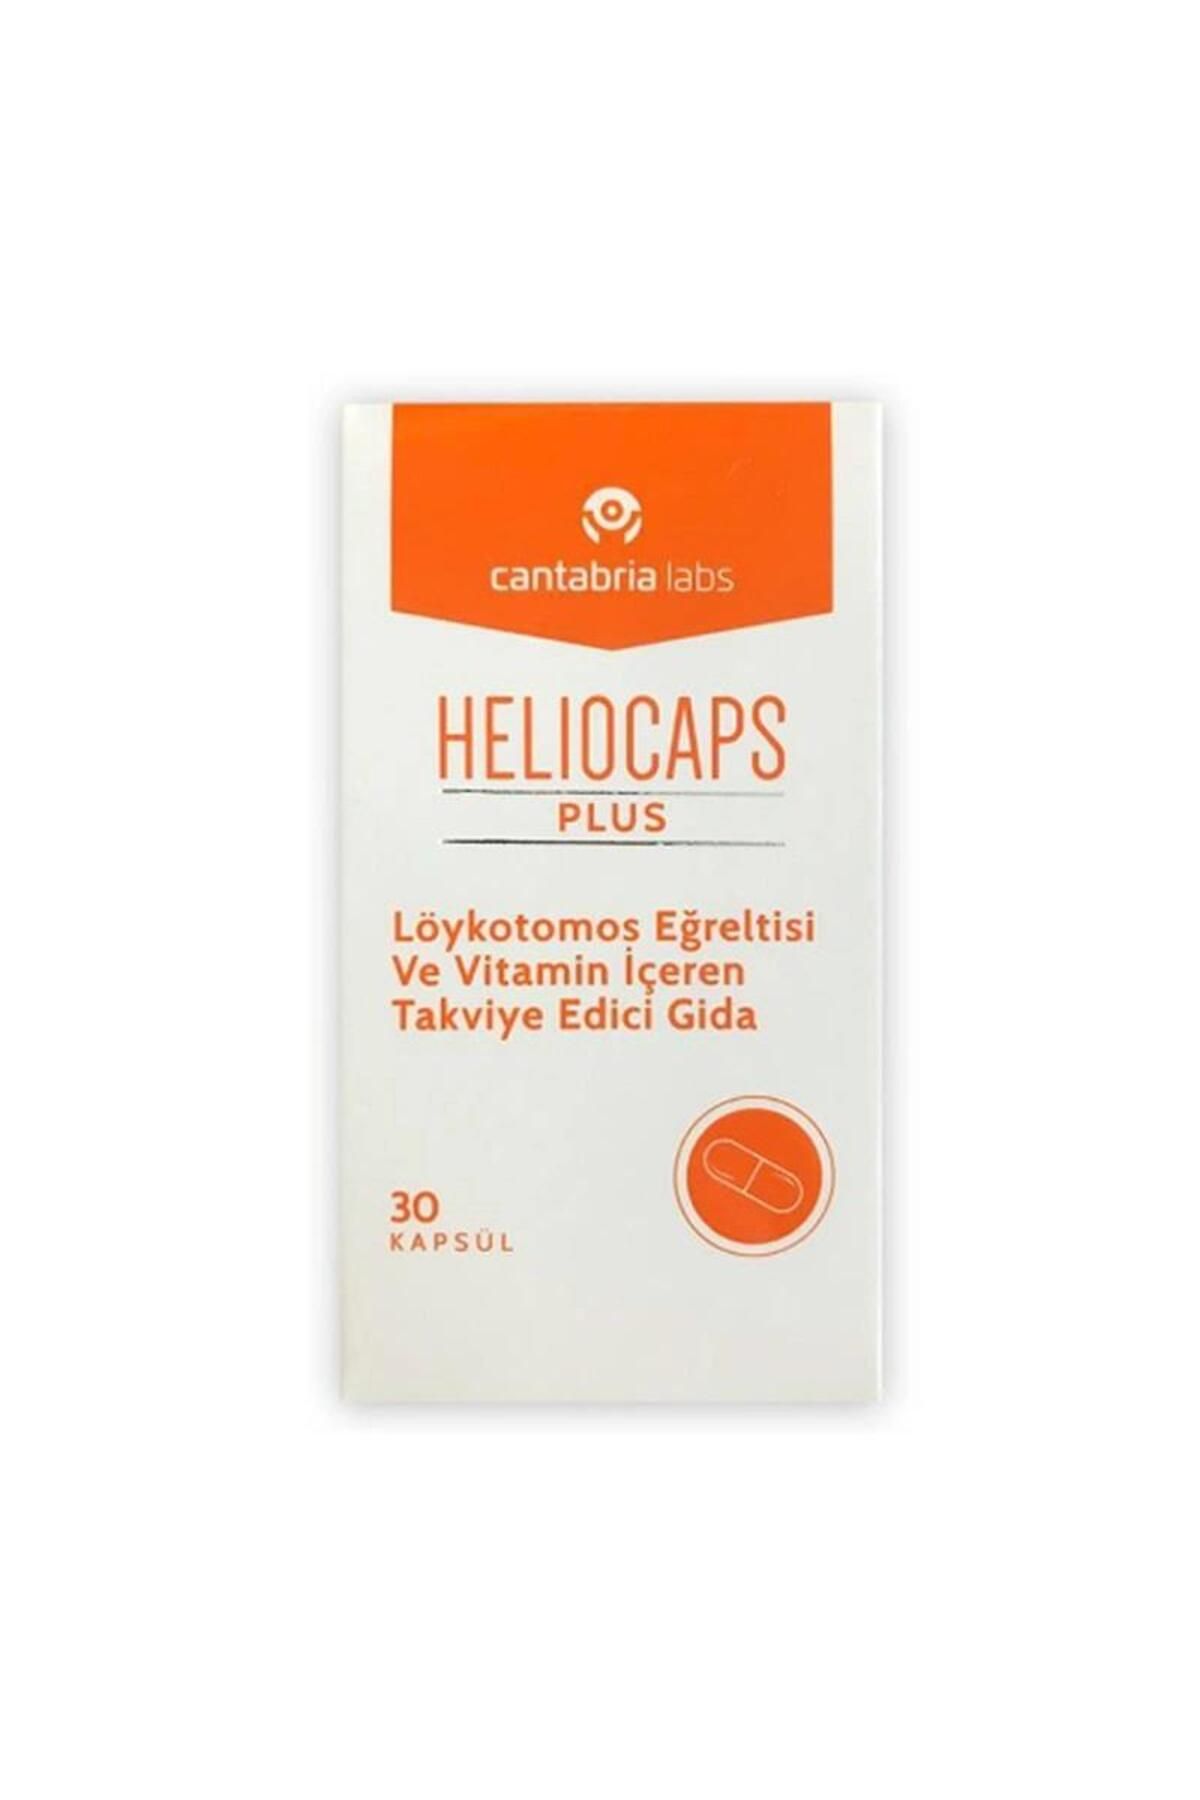 Heliocare Heliocaps Plus Löykotomos Eğreltisi İçeren Takviye Gıda 30 Kapsül